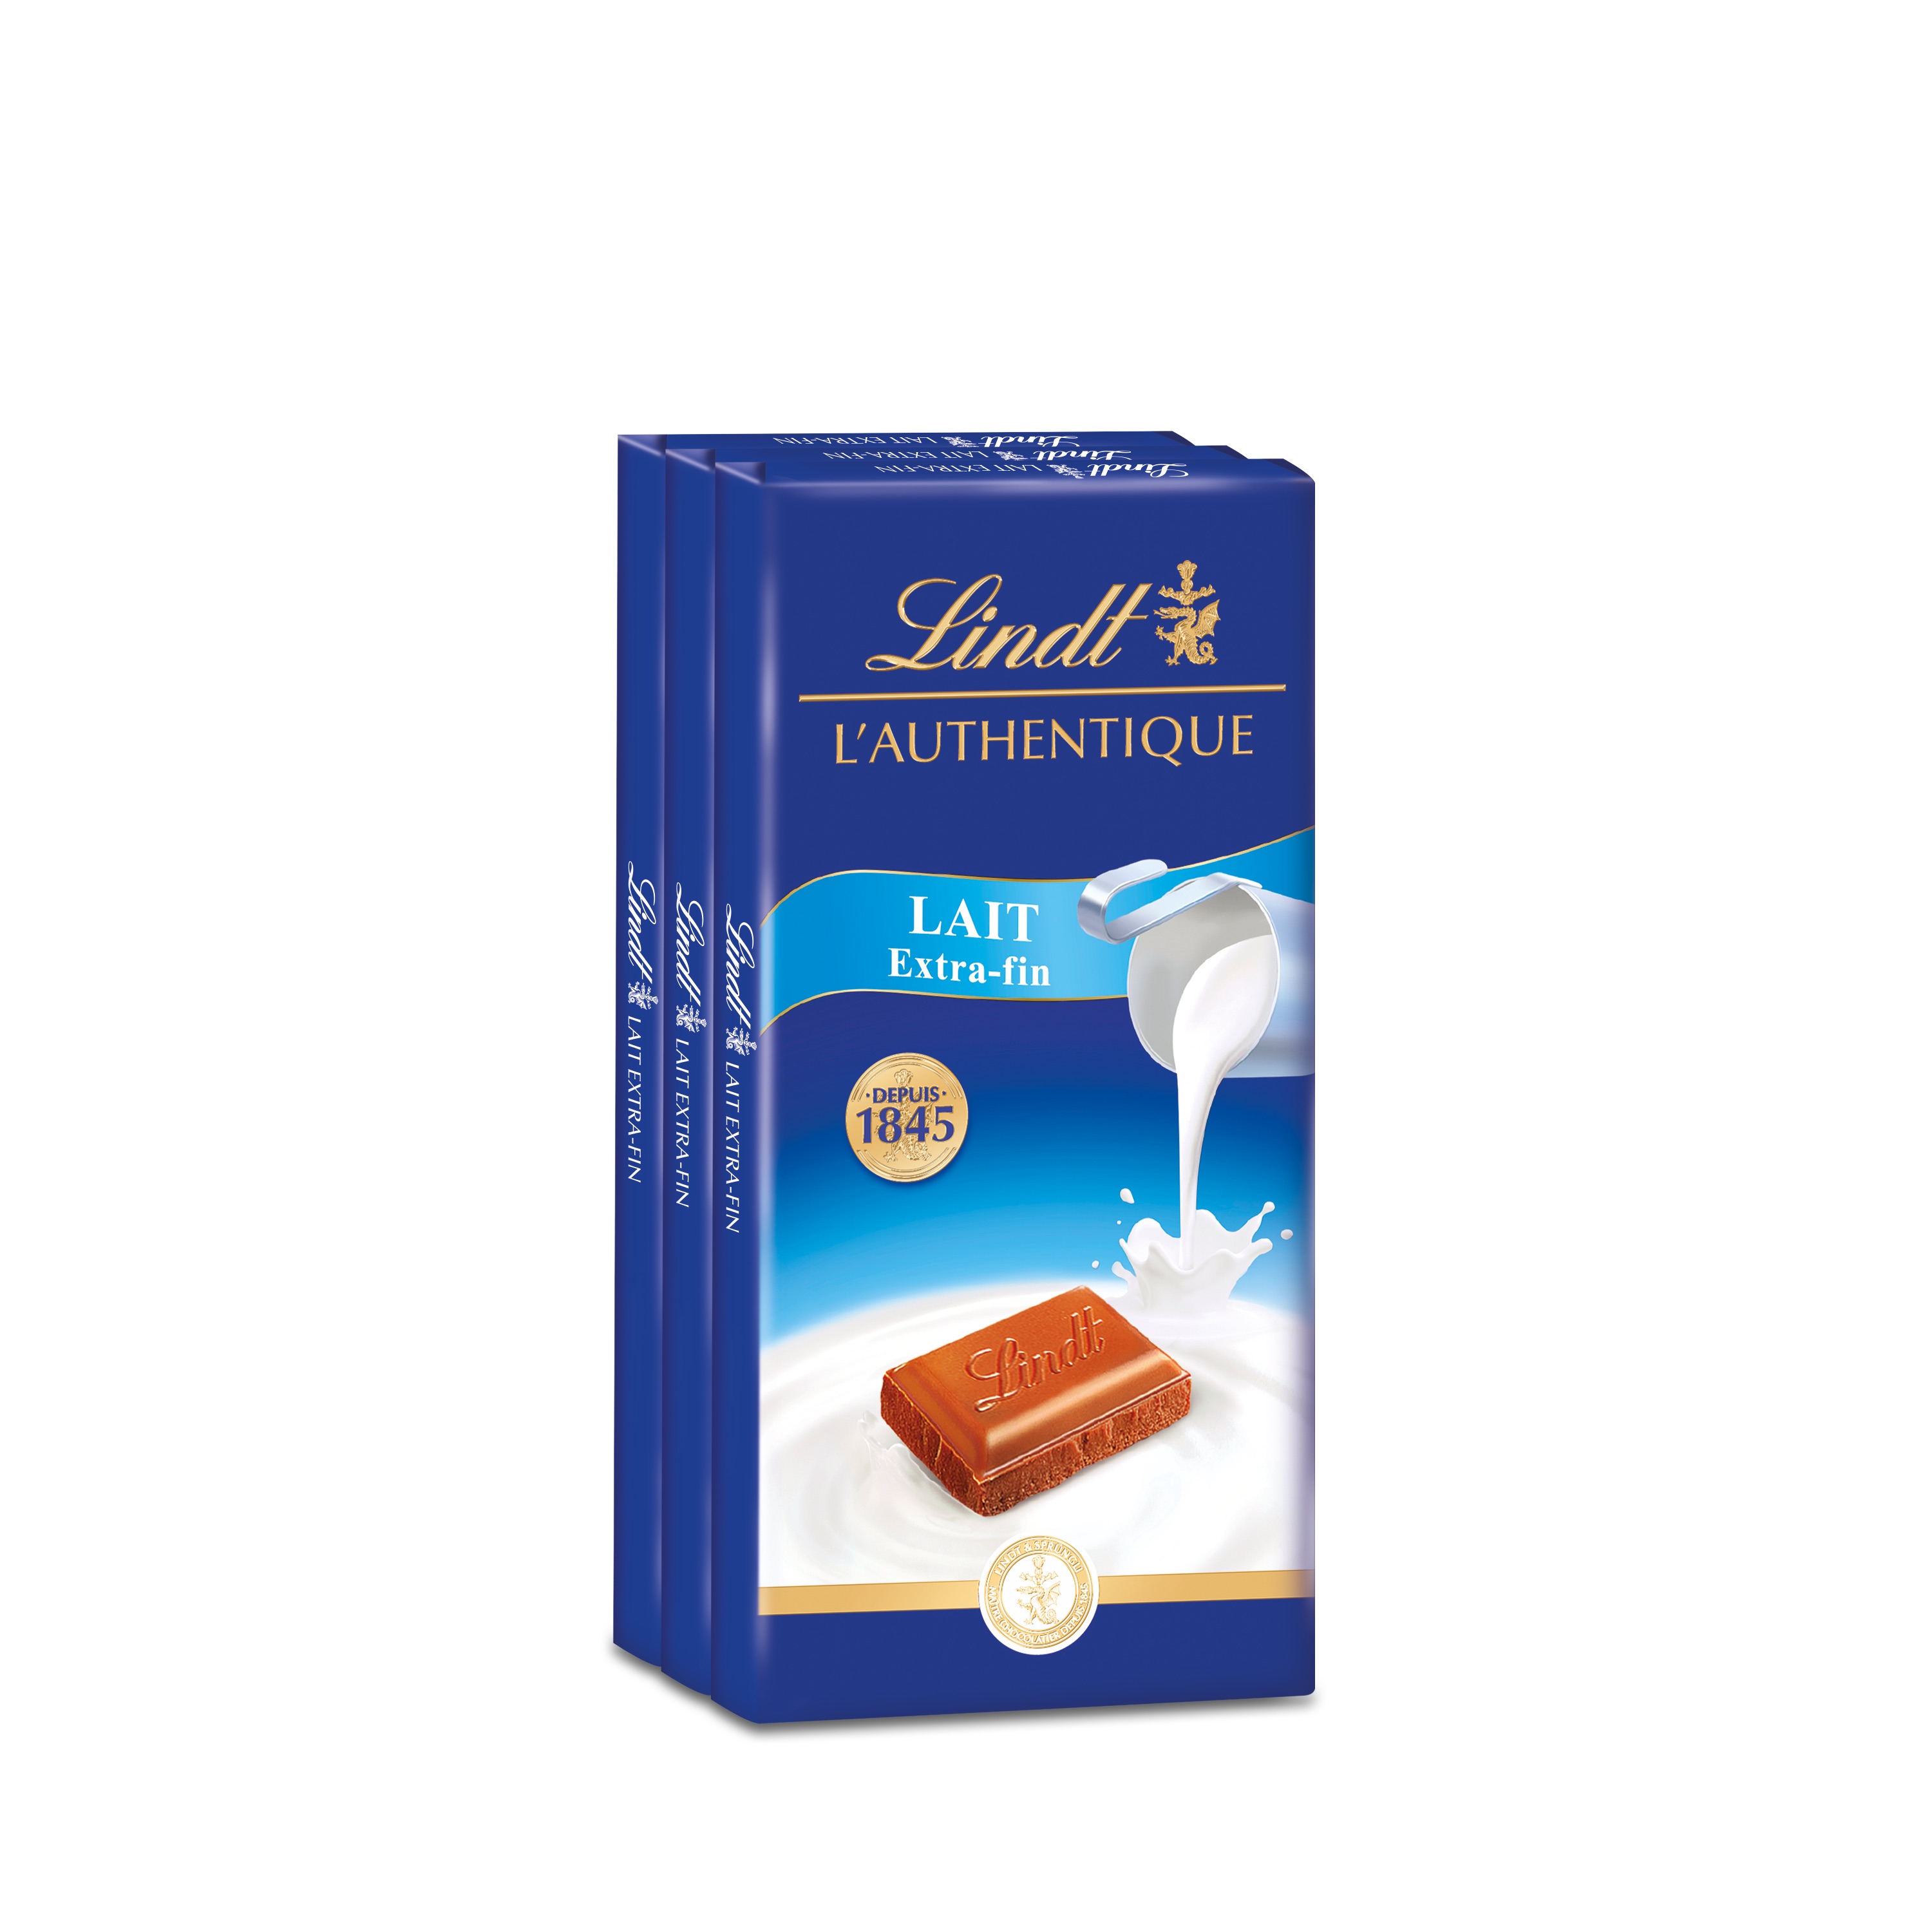 Lindt - Tablette Extra Fondant MAITRE CHOCOLATIER - Chocolat Noir